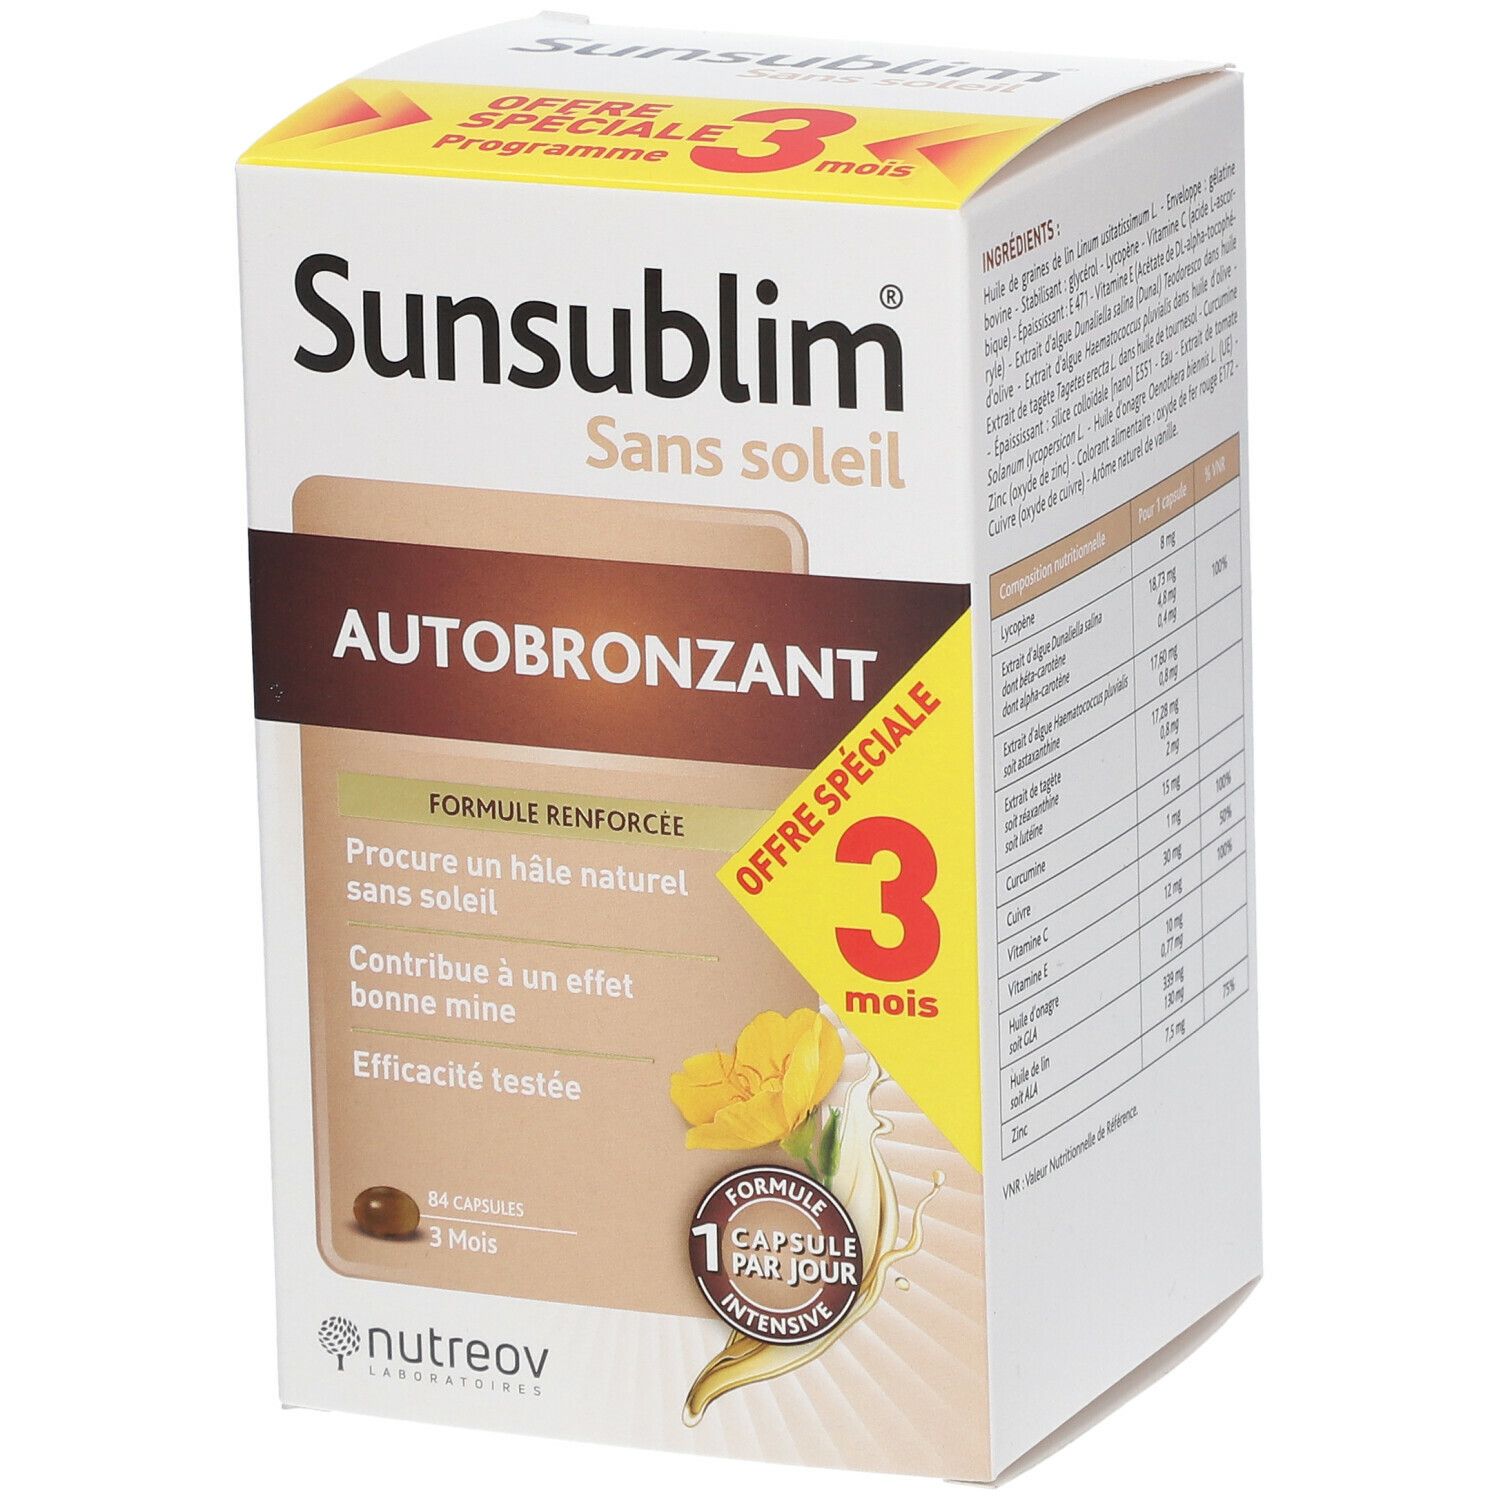 Nutreov Physcience Sunsublim® Sans soleil Autobronzant